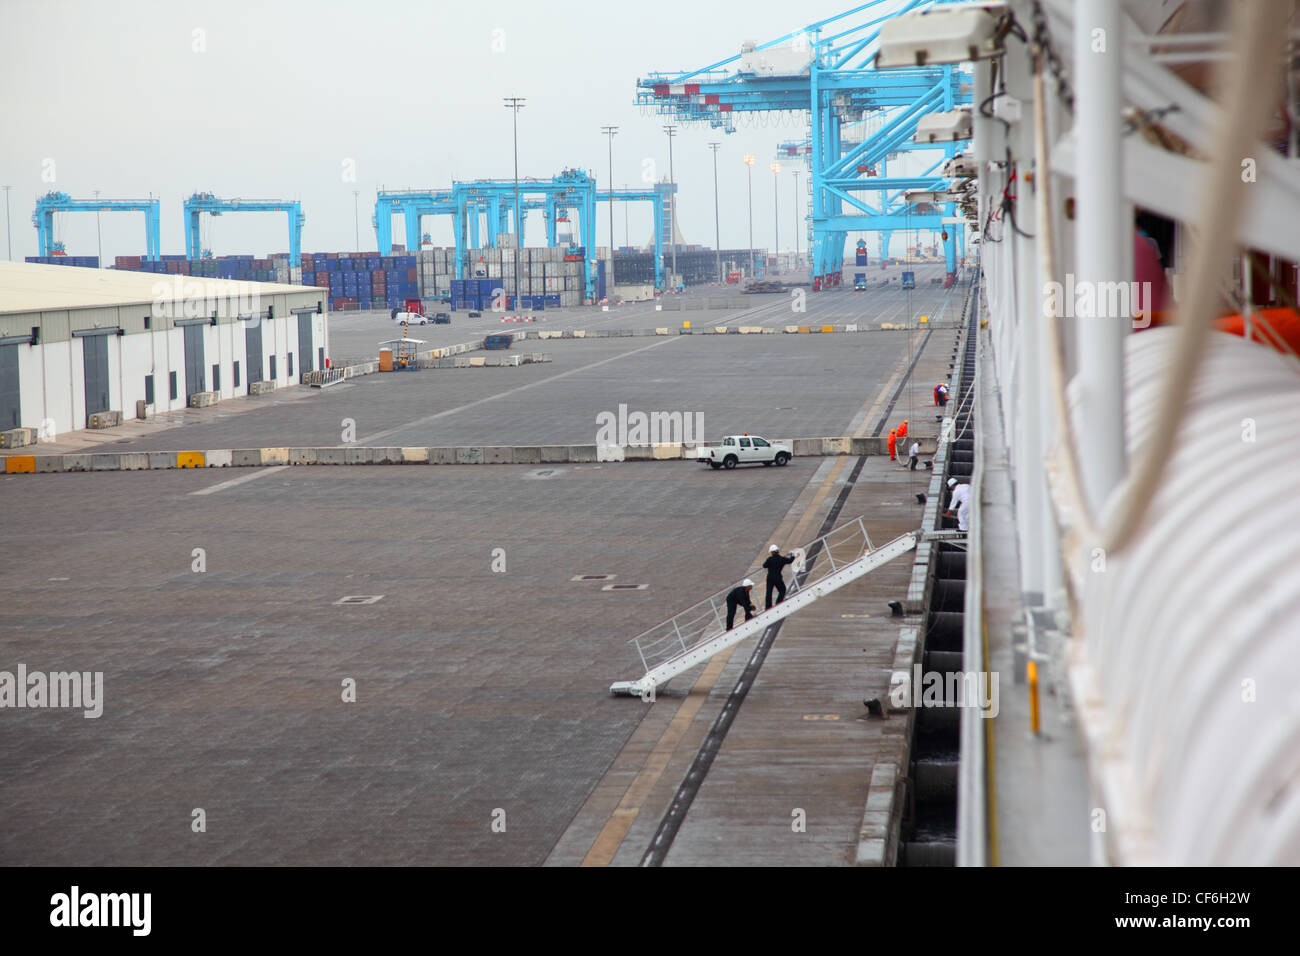 Gli uomini salire sulla nave ormeggiata al grande porto industriale alla giornata di nebbia Foto Stock